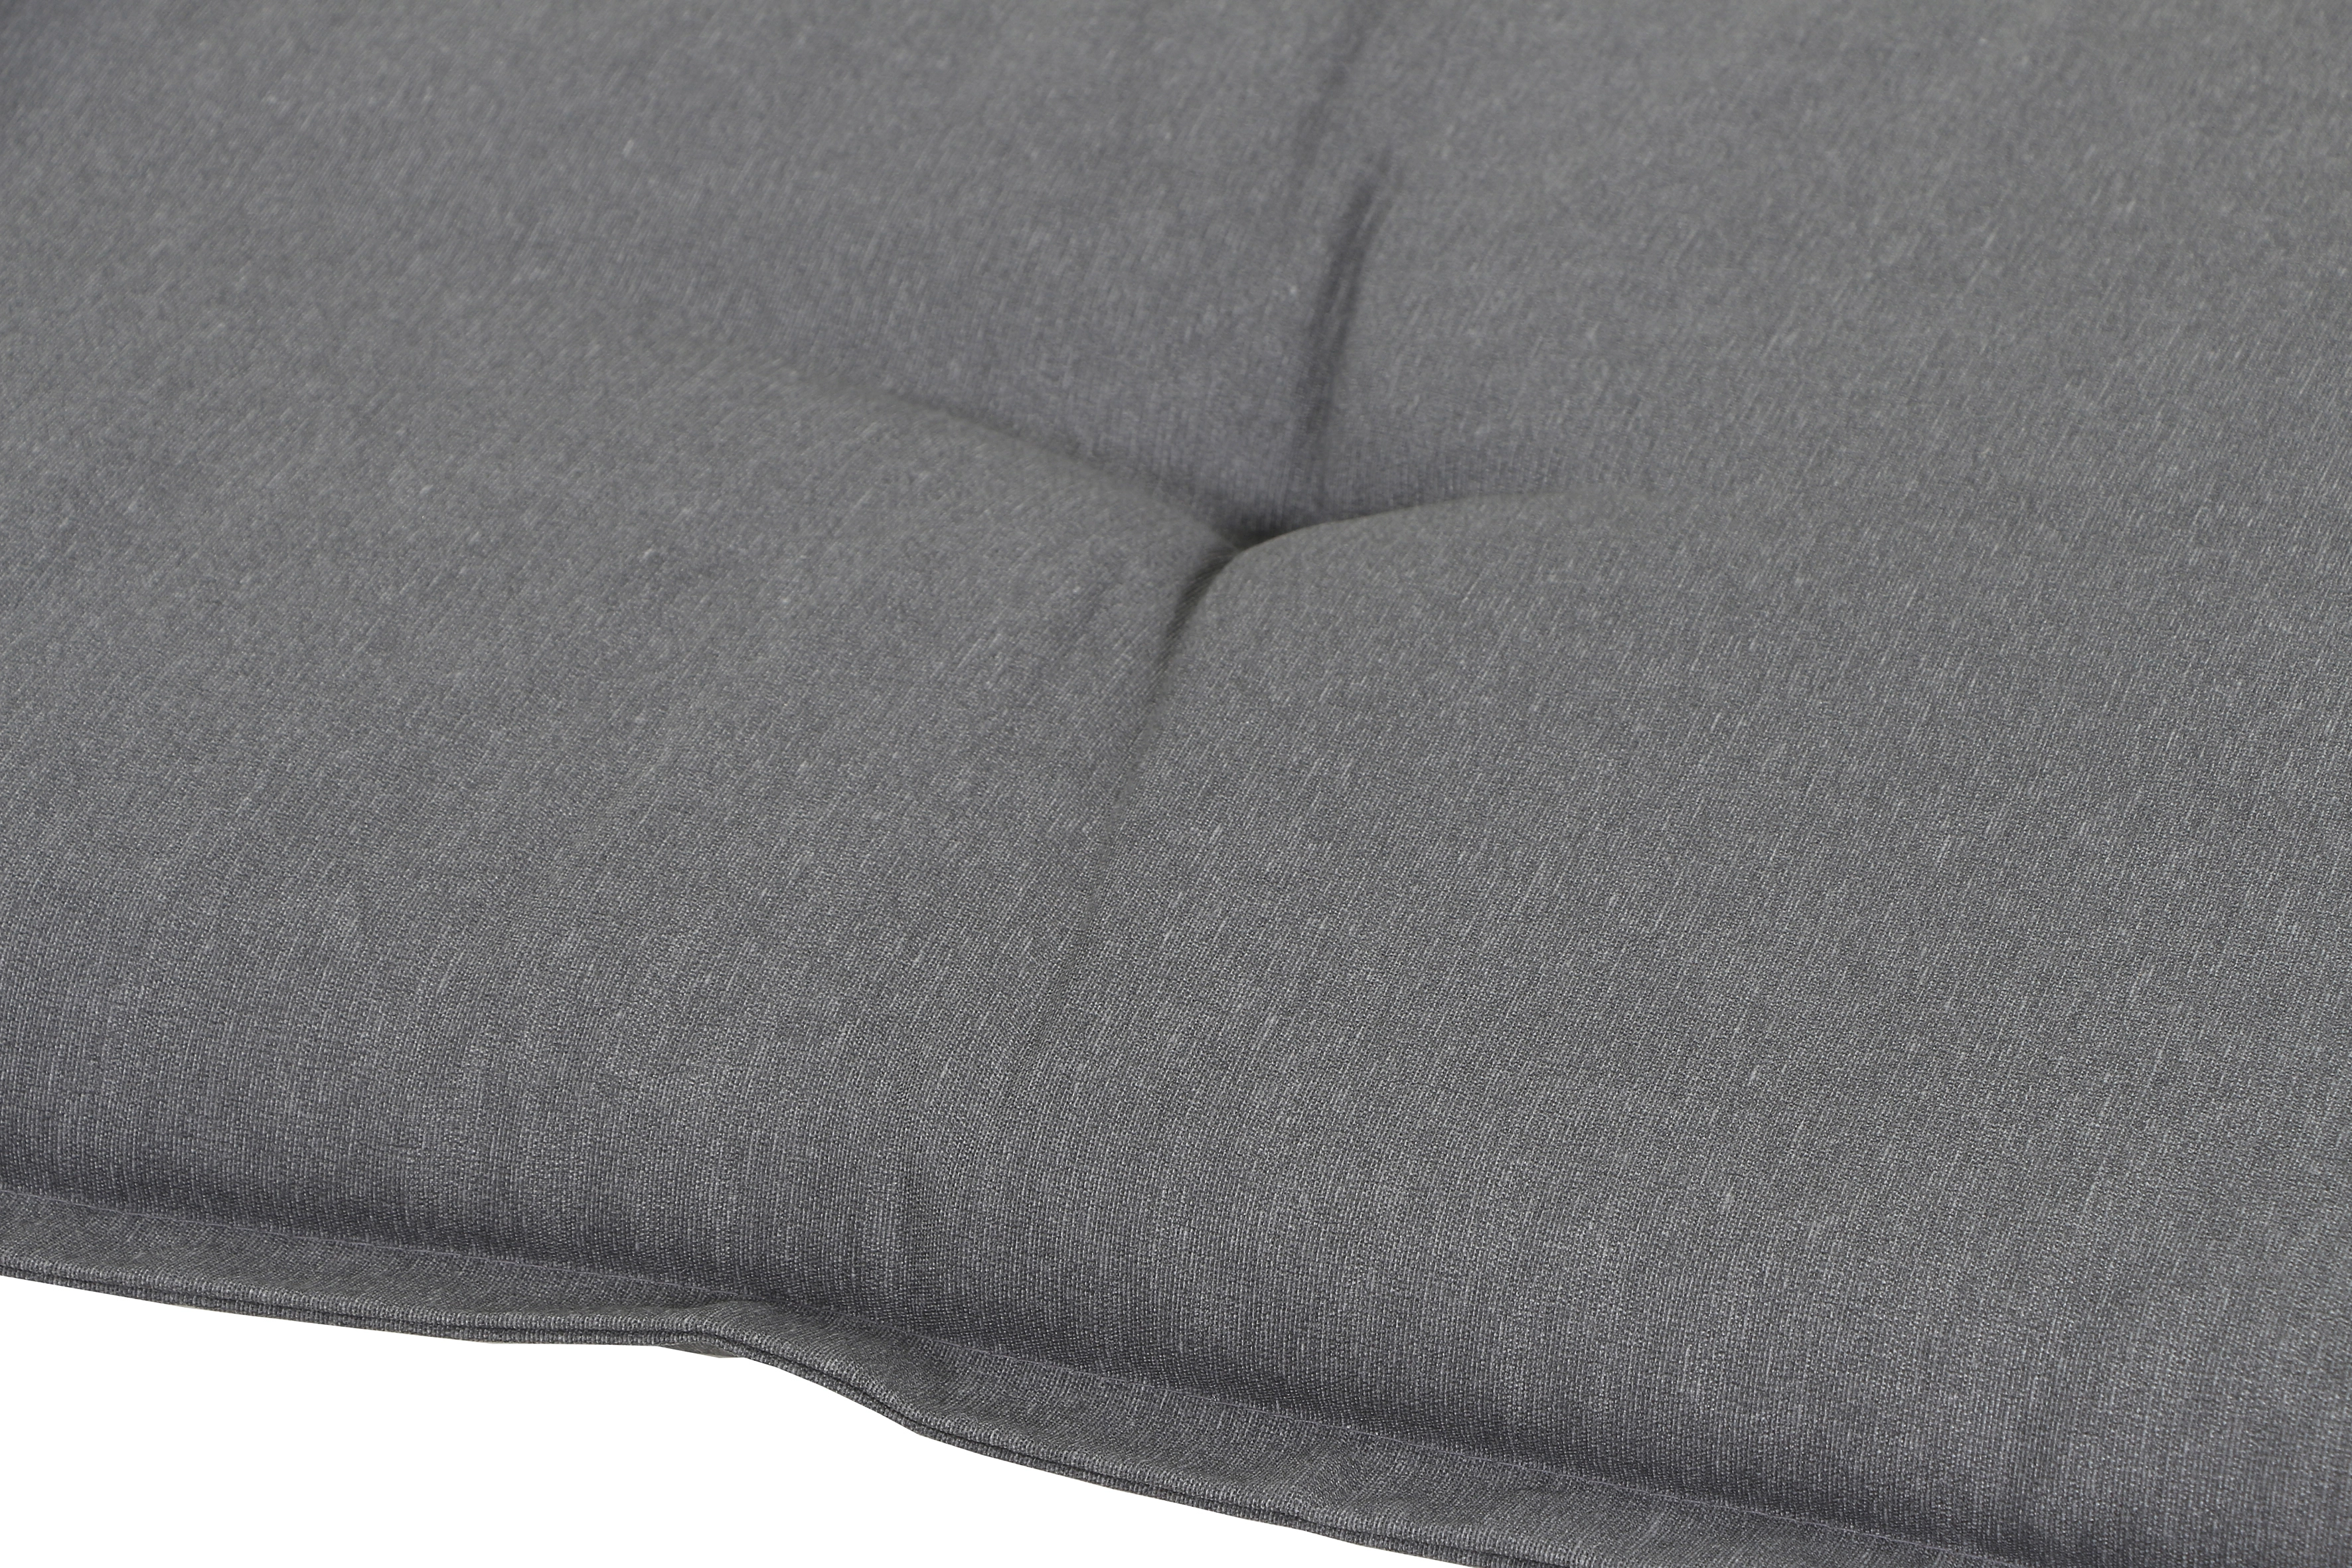 Madison Auflage Panama Grey für 3-Sitzer Bänke ca. 140 cm x 48 cm kaufen  bei OBI